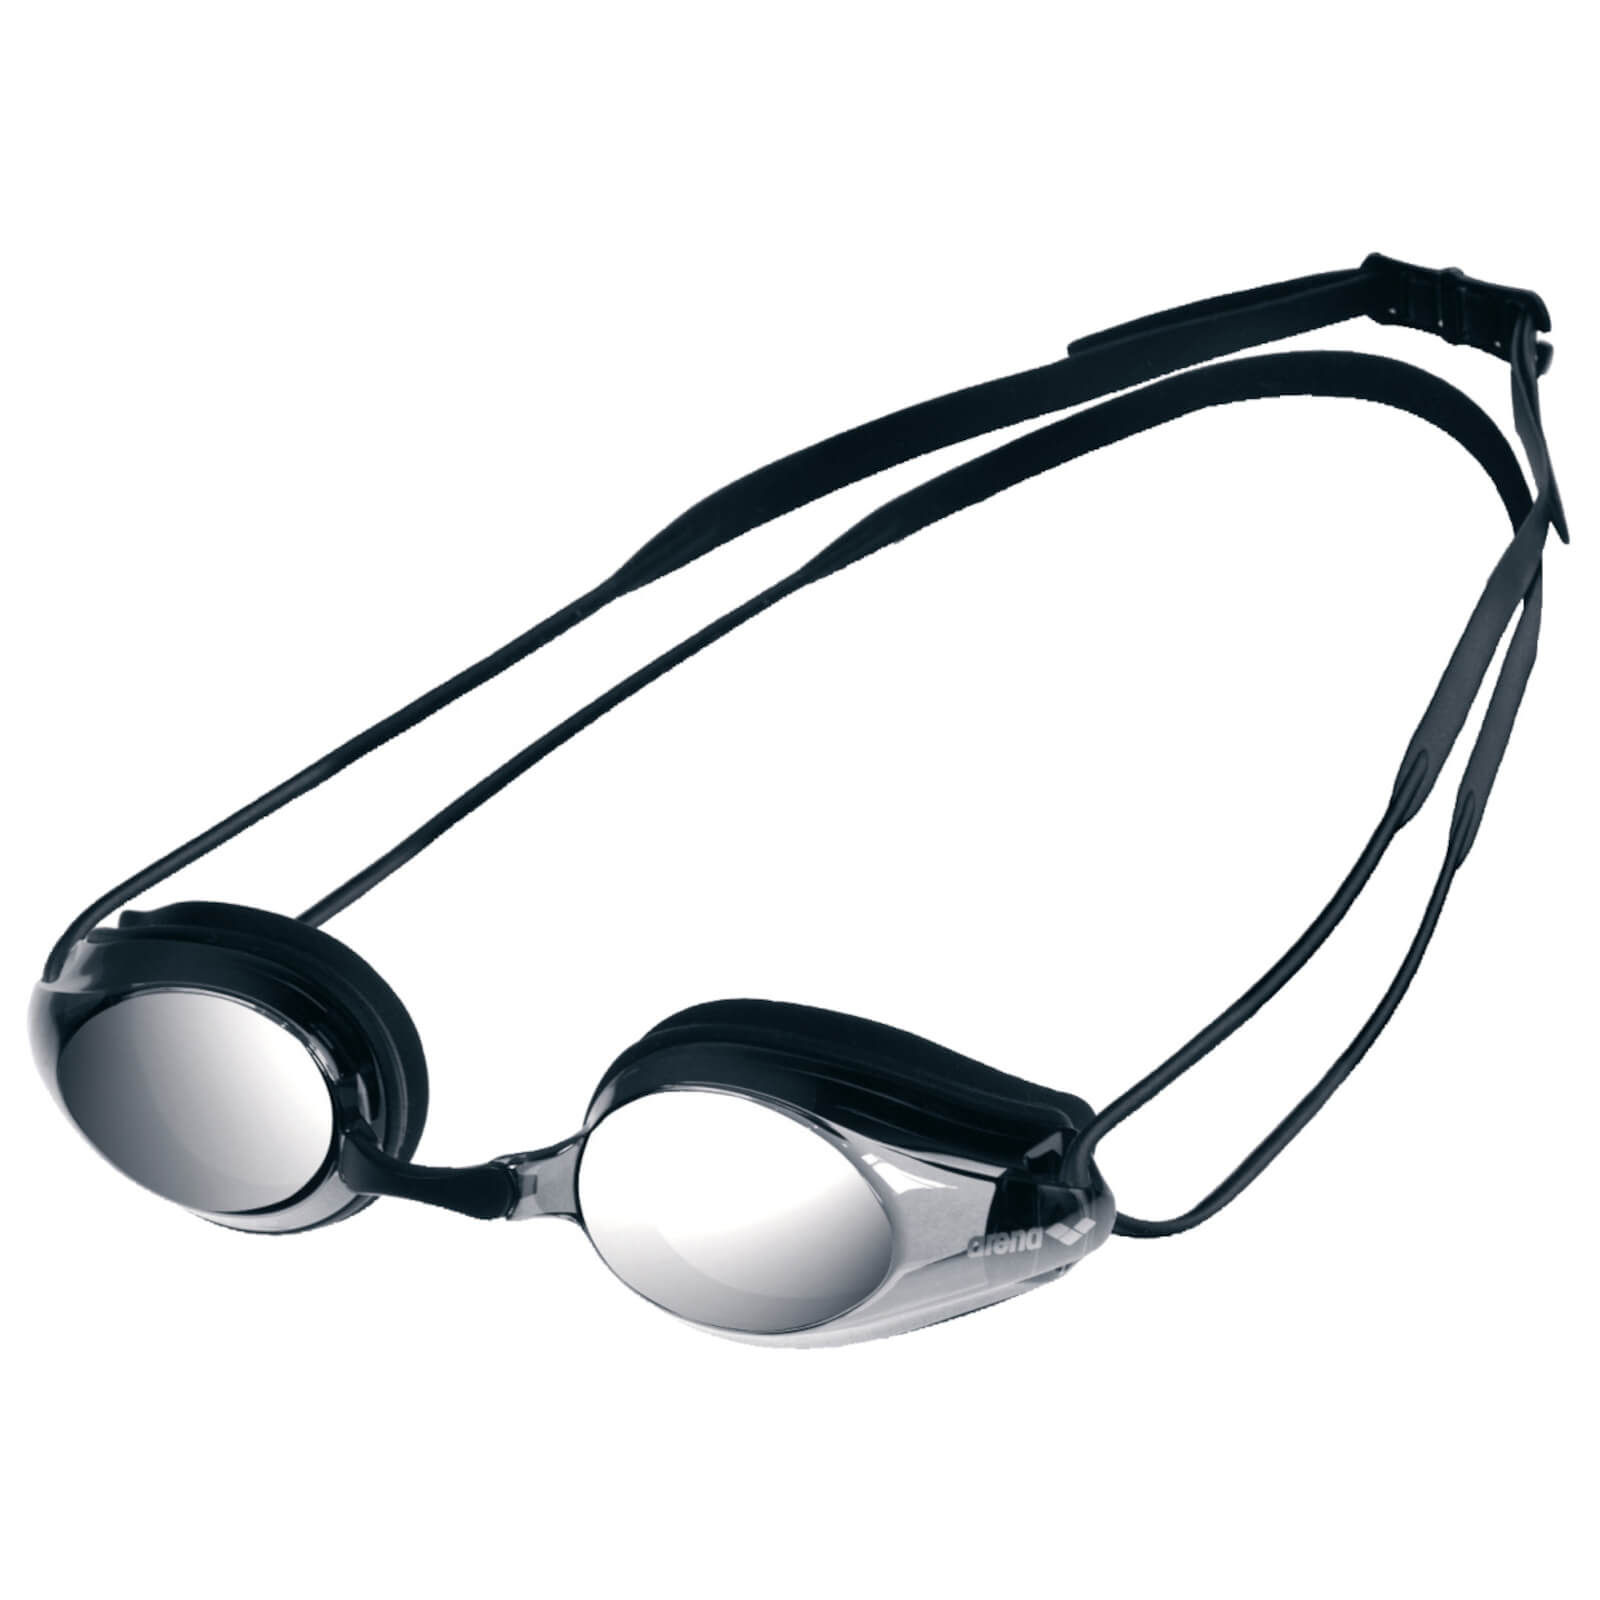 Men's Swimming Goggles Arena Tracks Mirrored Black/Smoke Silver